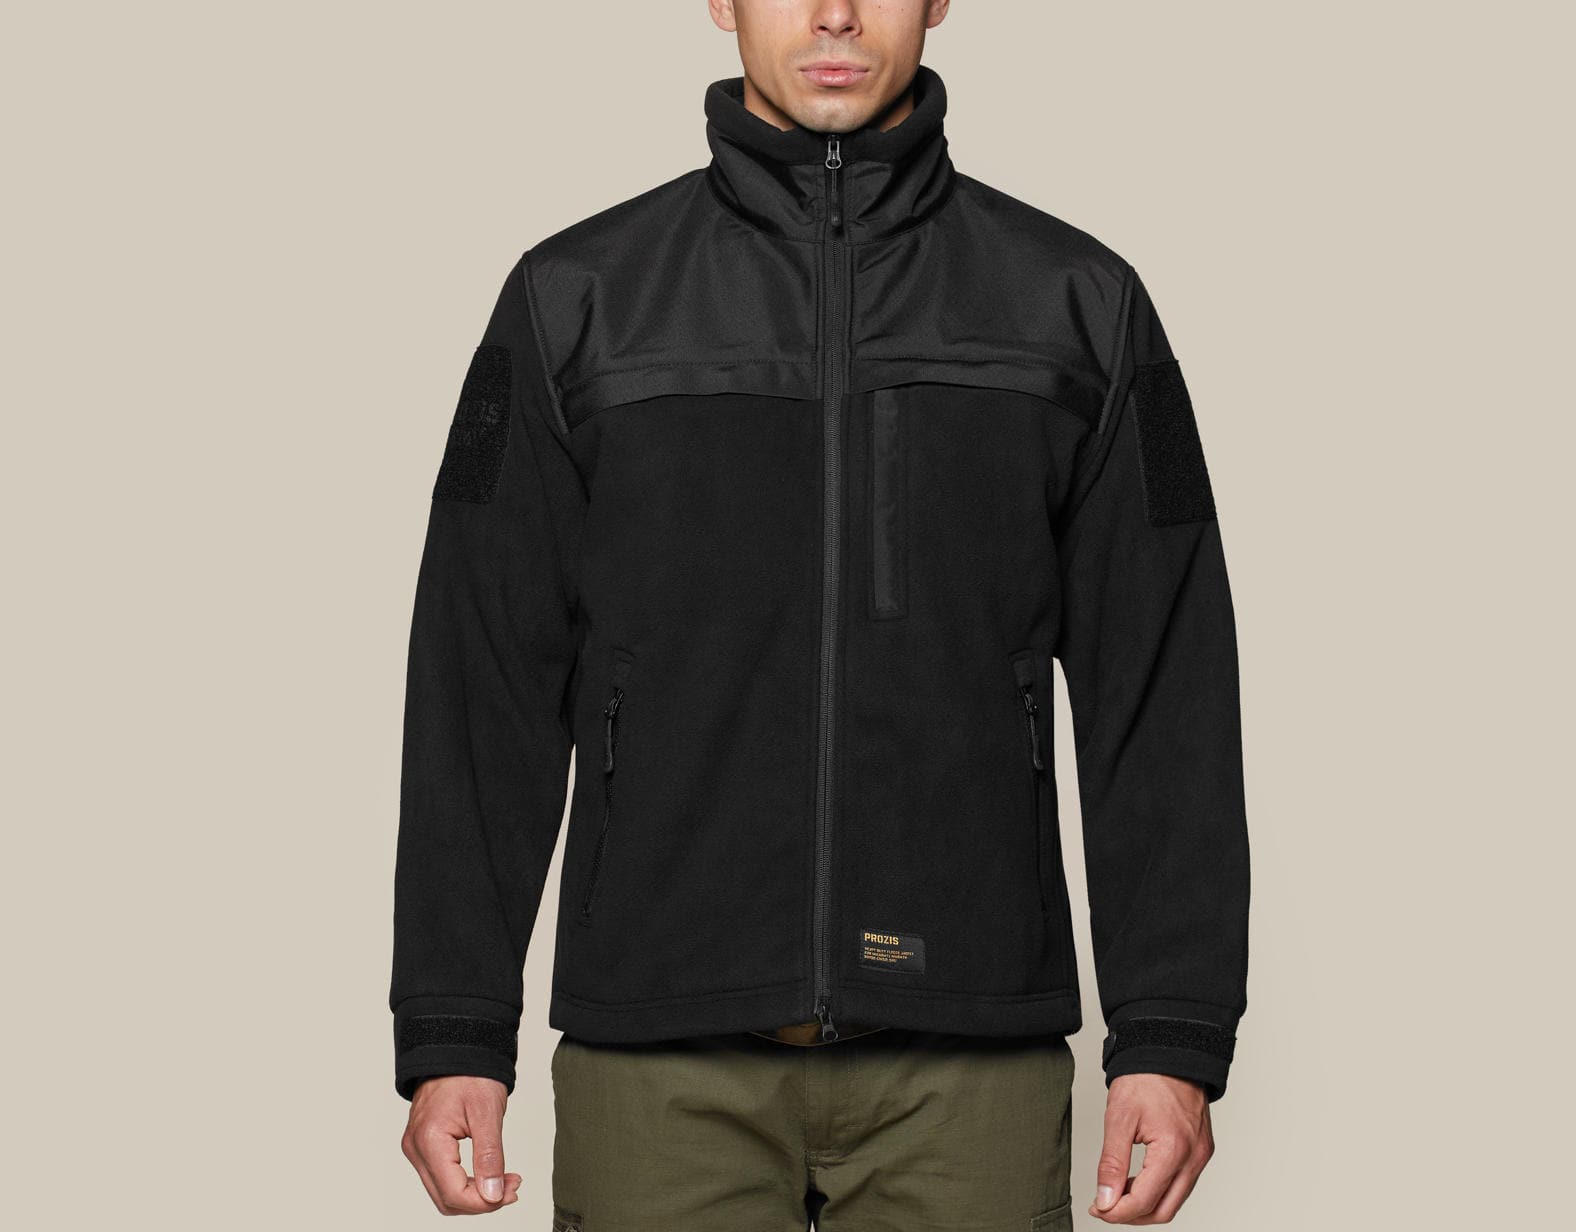 Army Heavy Duty Fleece Jacket - Black